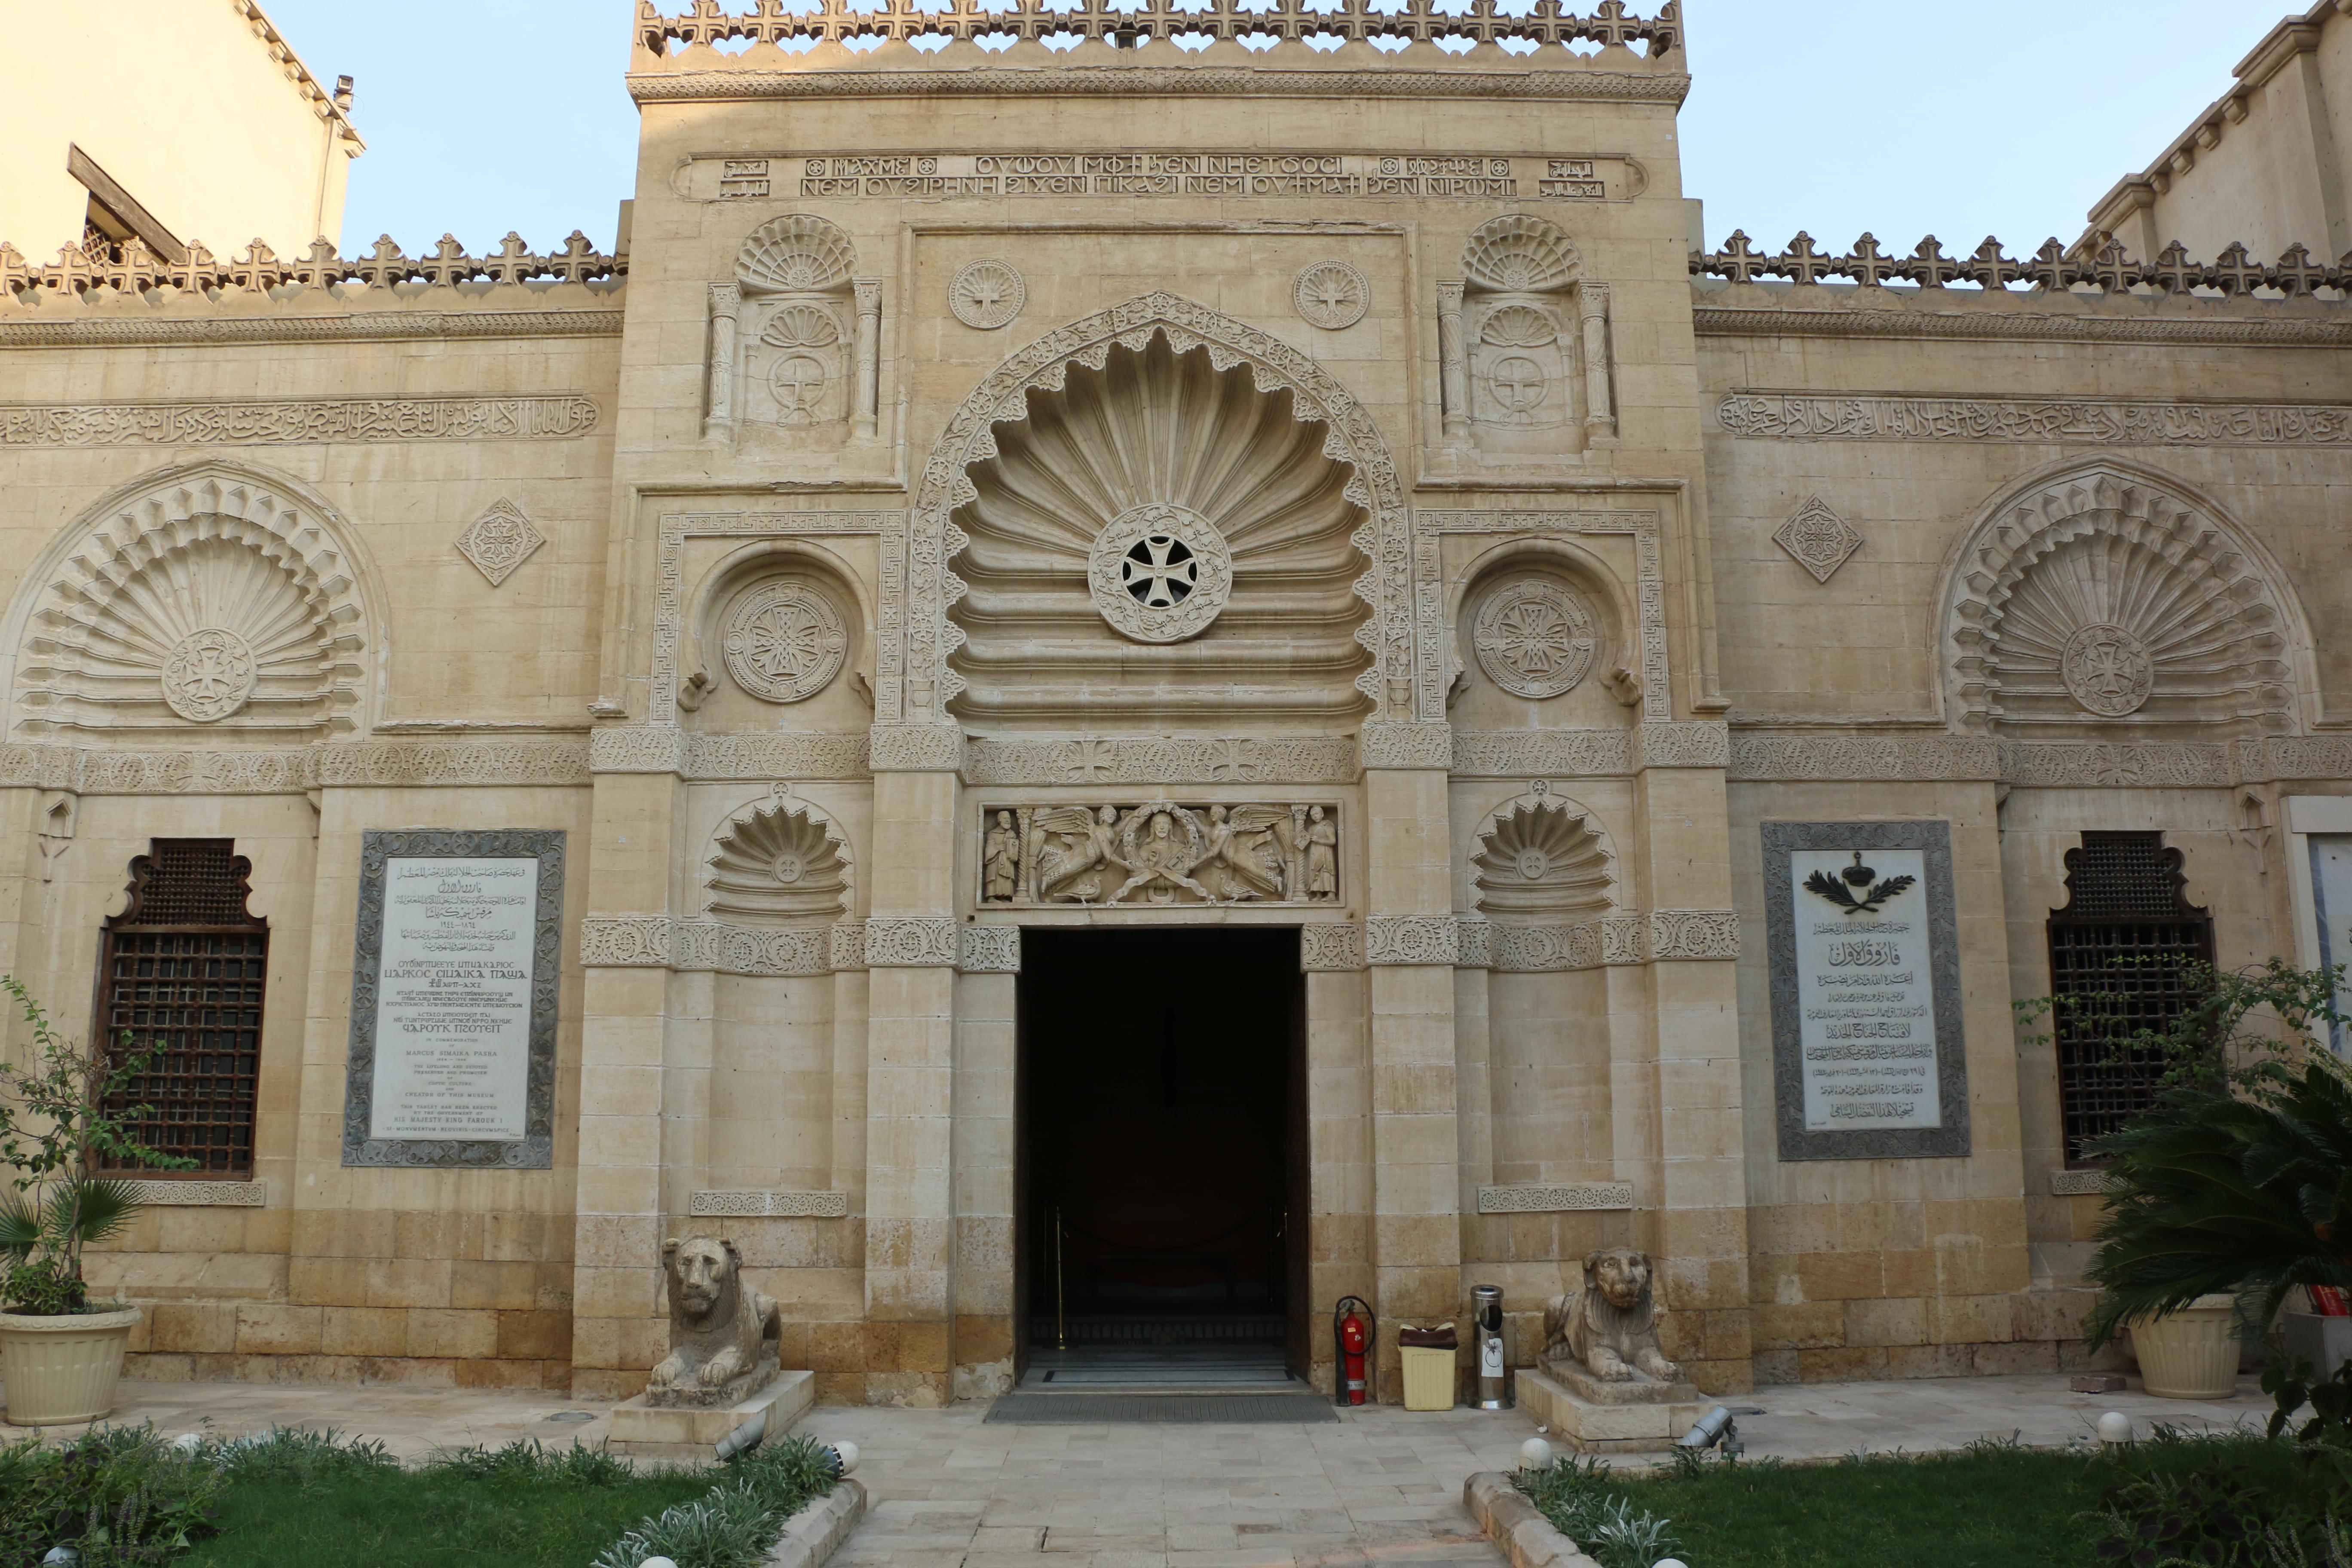 Visit the Coptic Museum